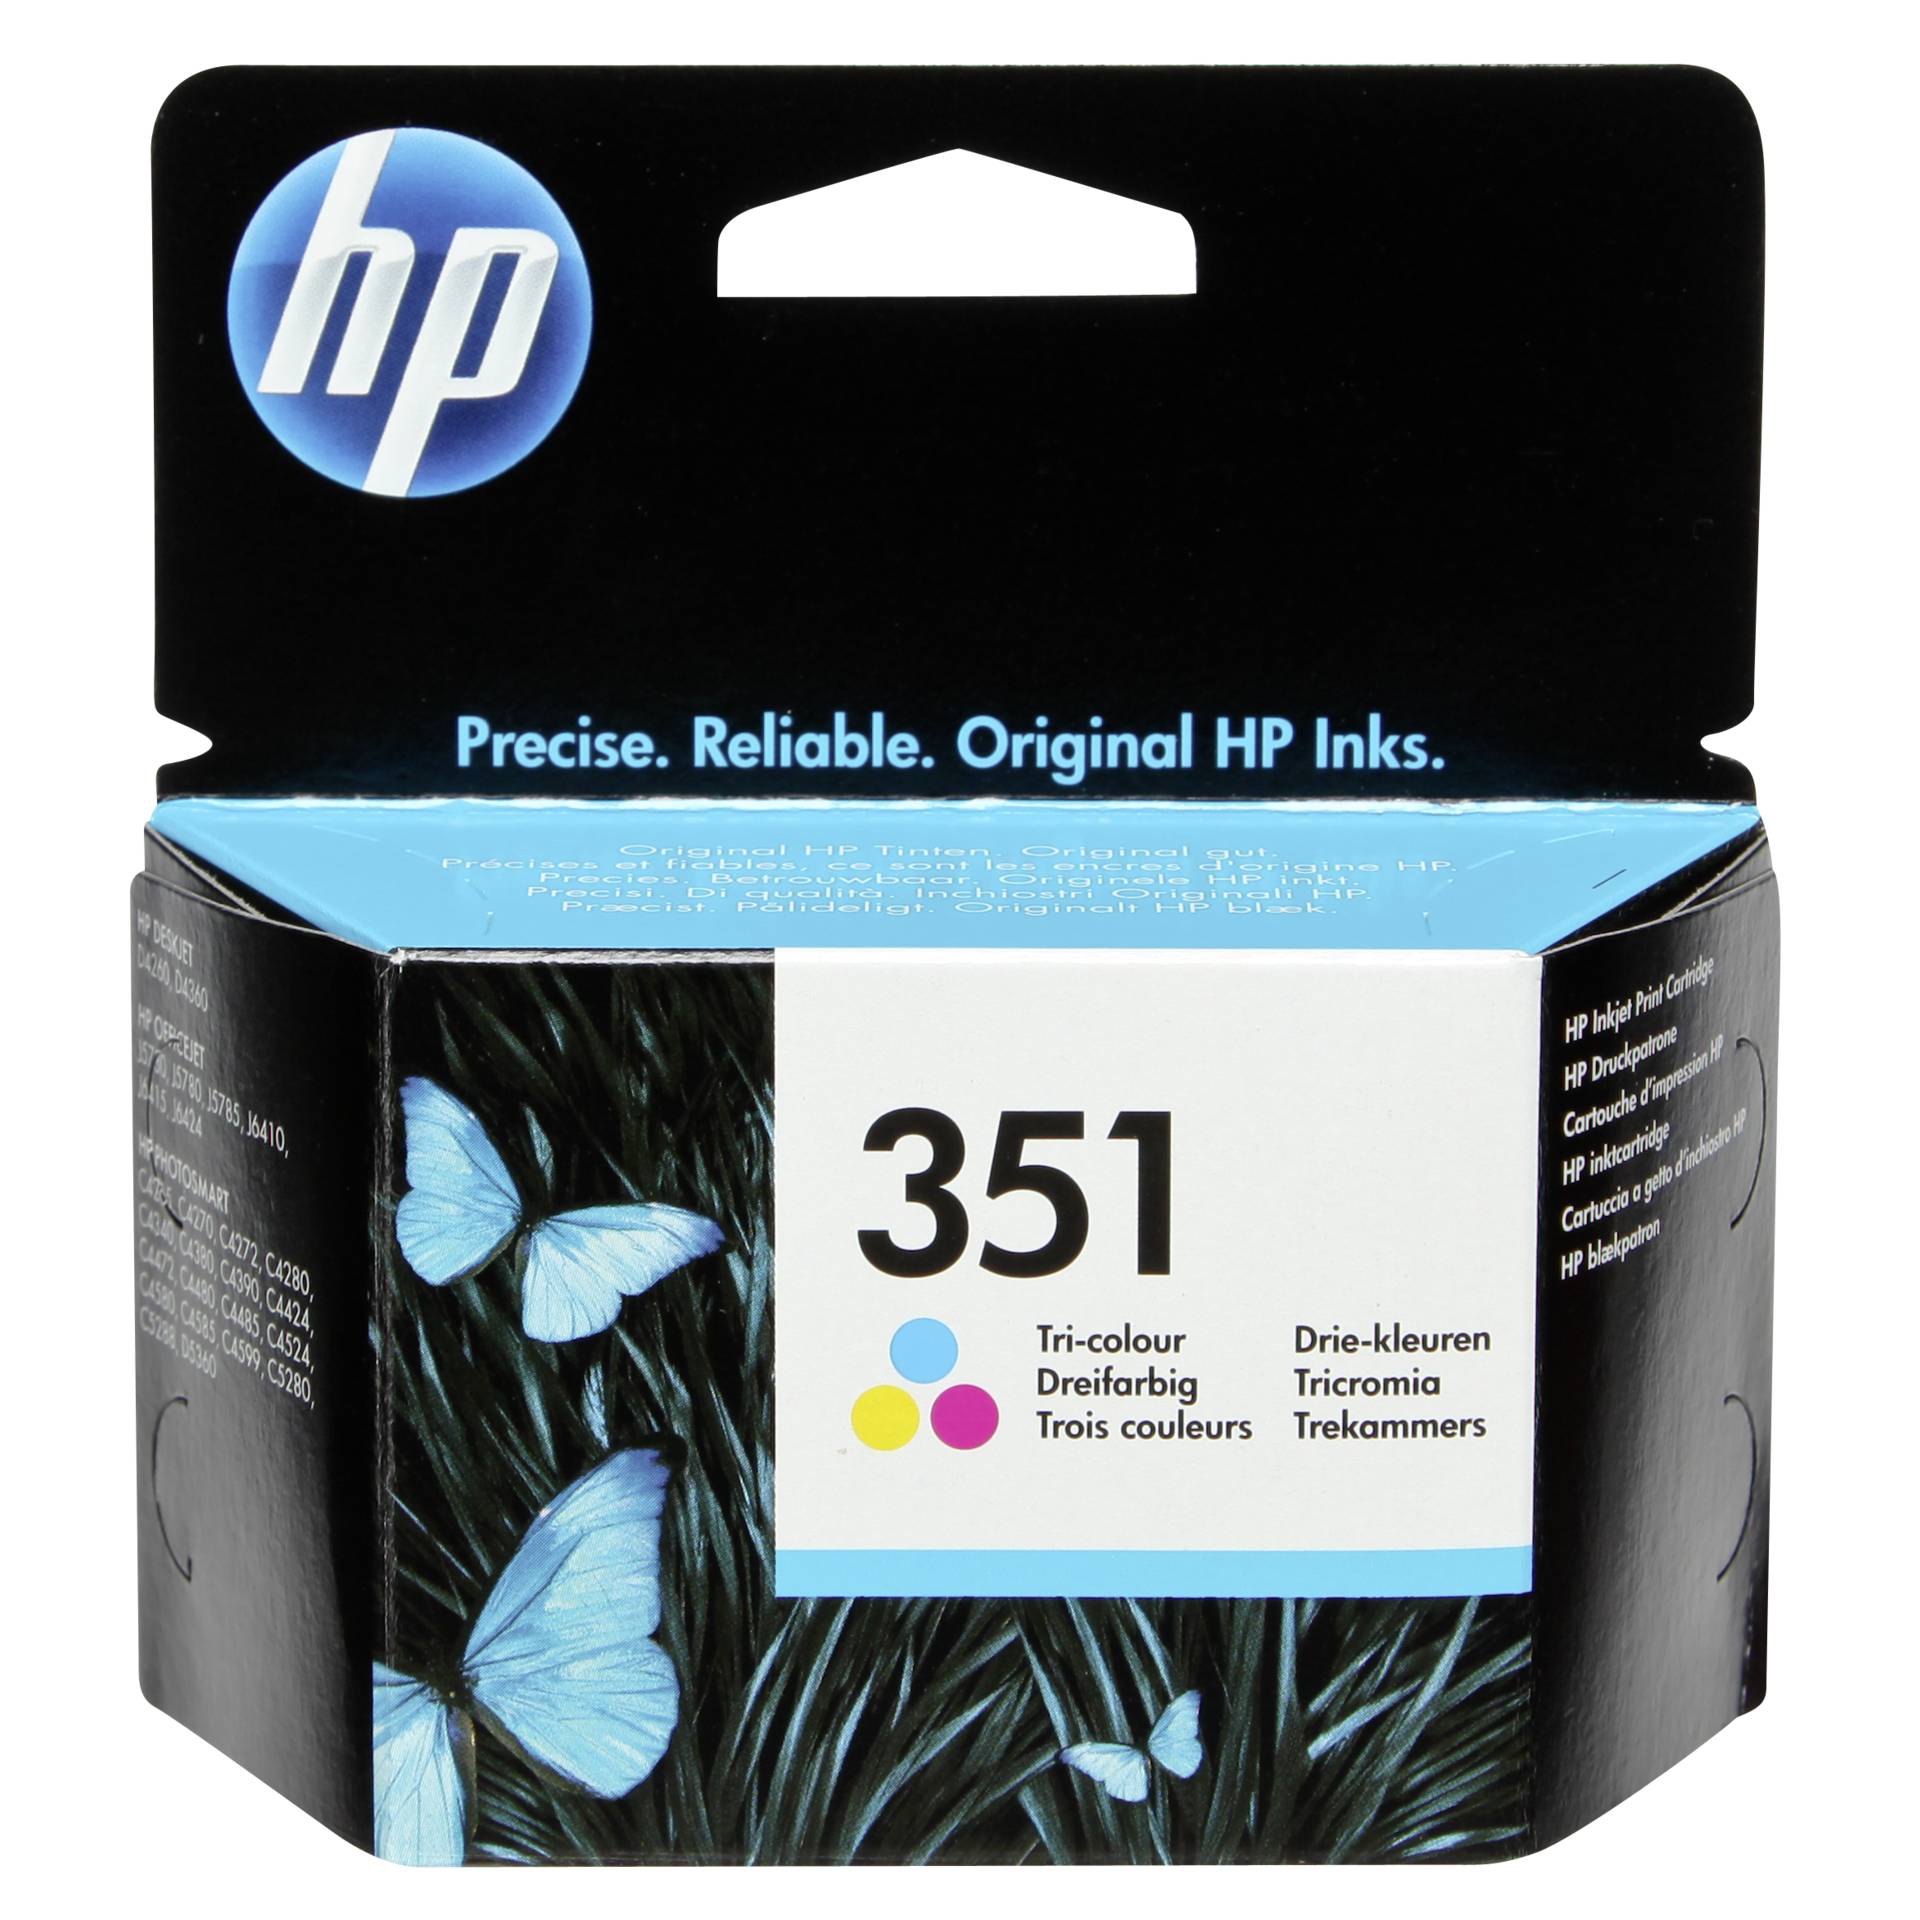 HP Druckkopf mit Tinte Nr 351 farbig 